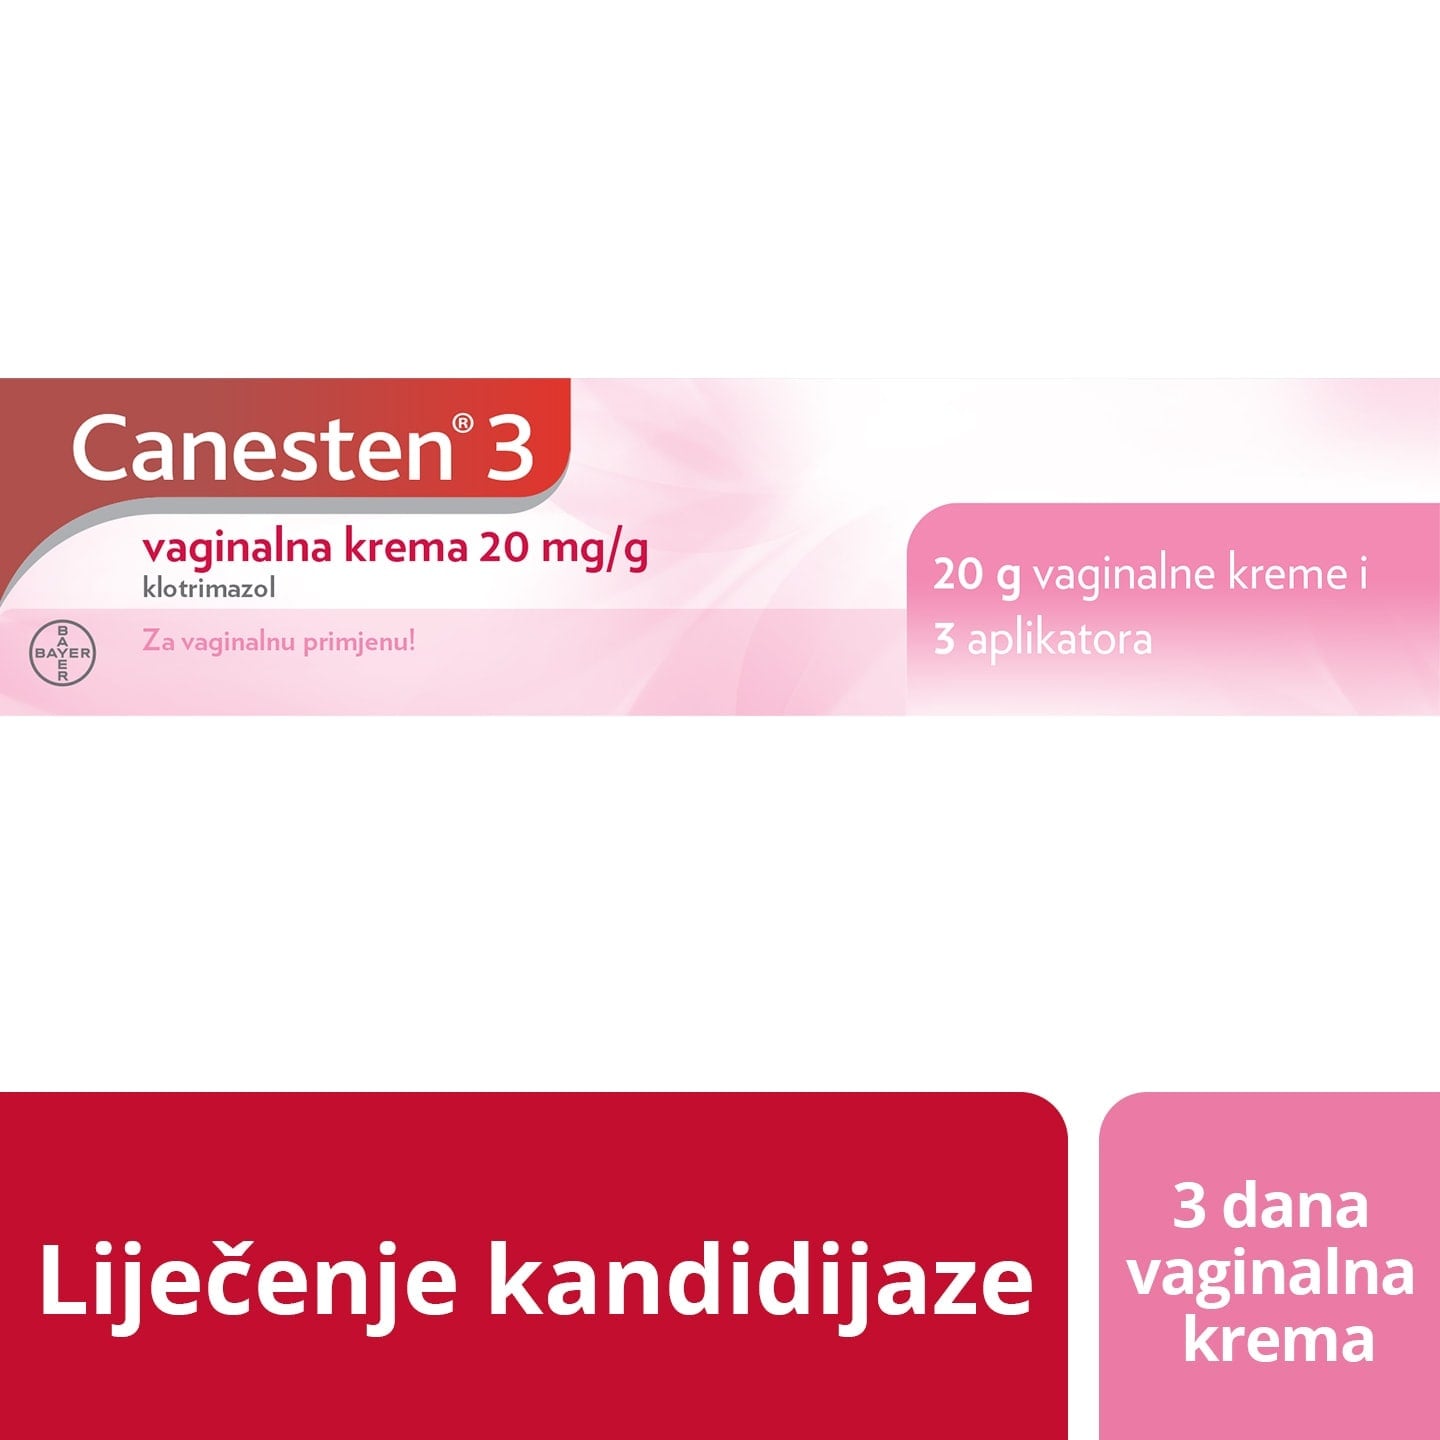 Canesten® 3 vaginalna krema 20 mg/g